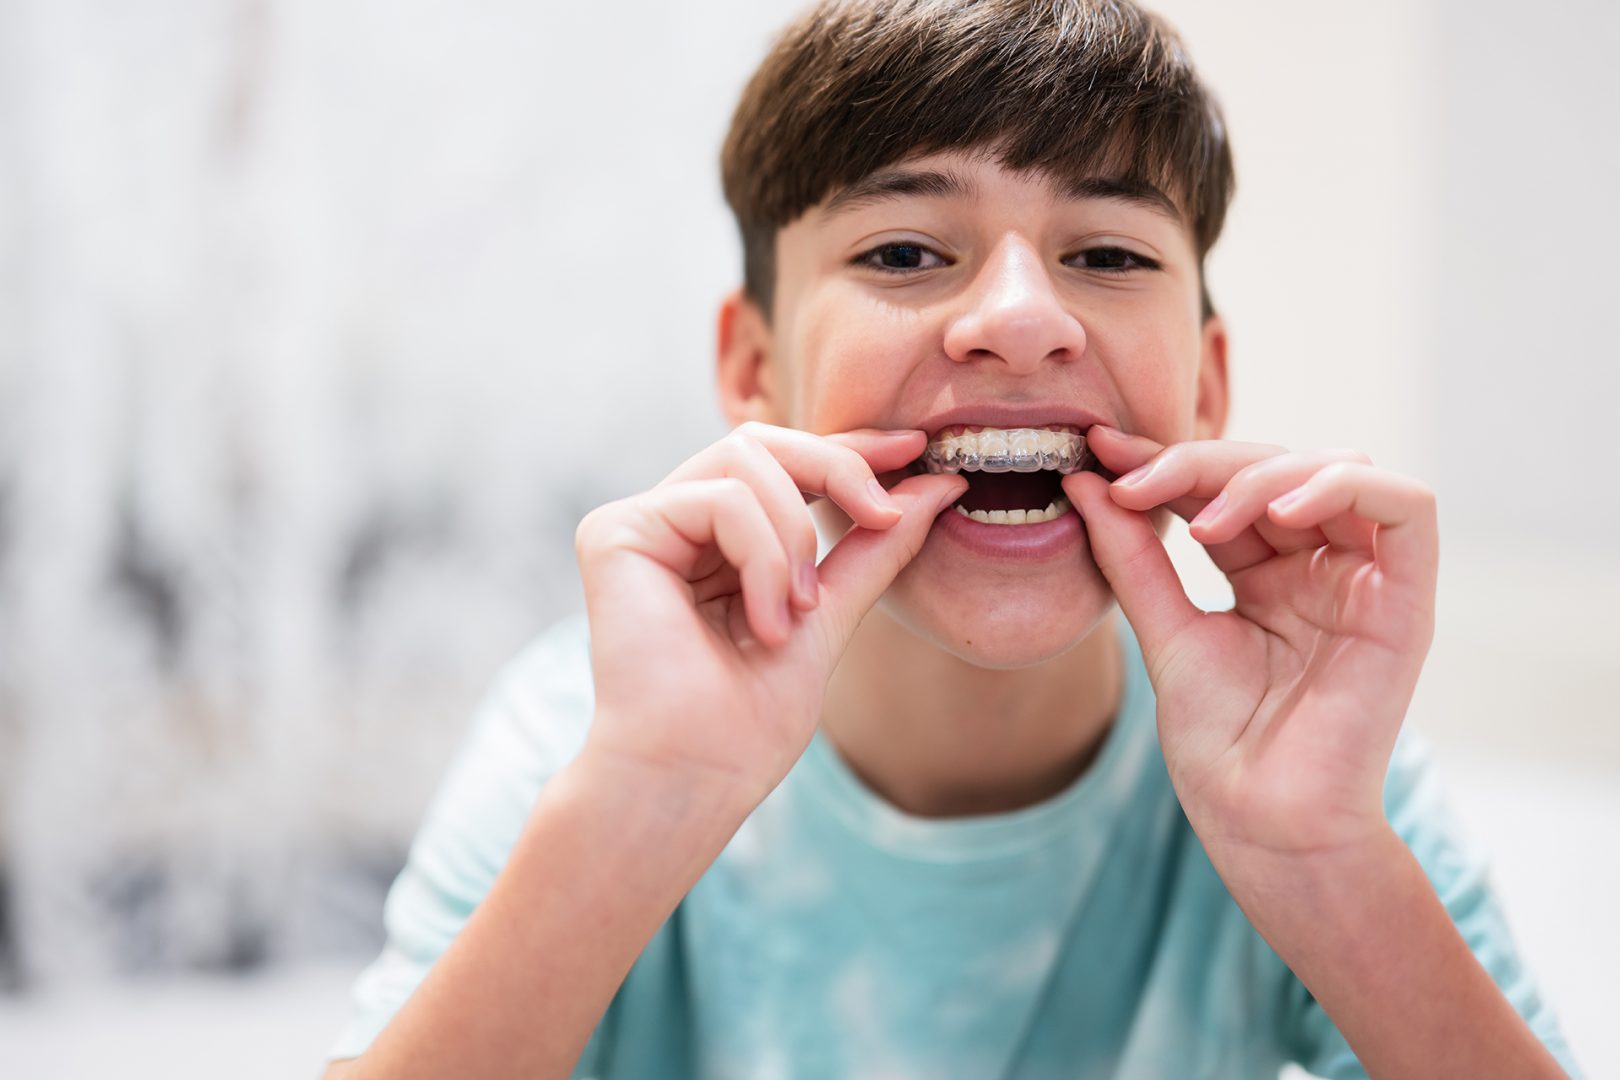 children's teeth braces cost